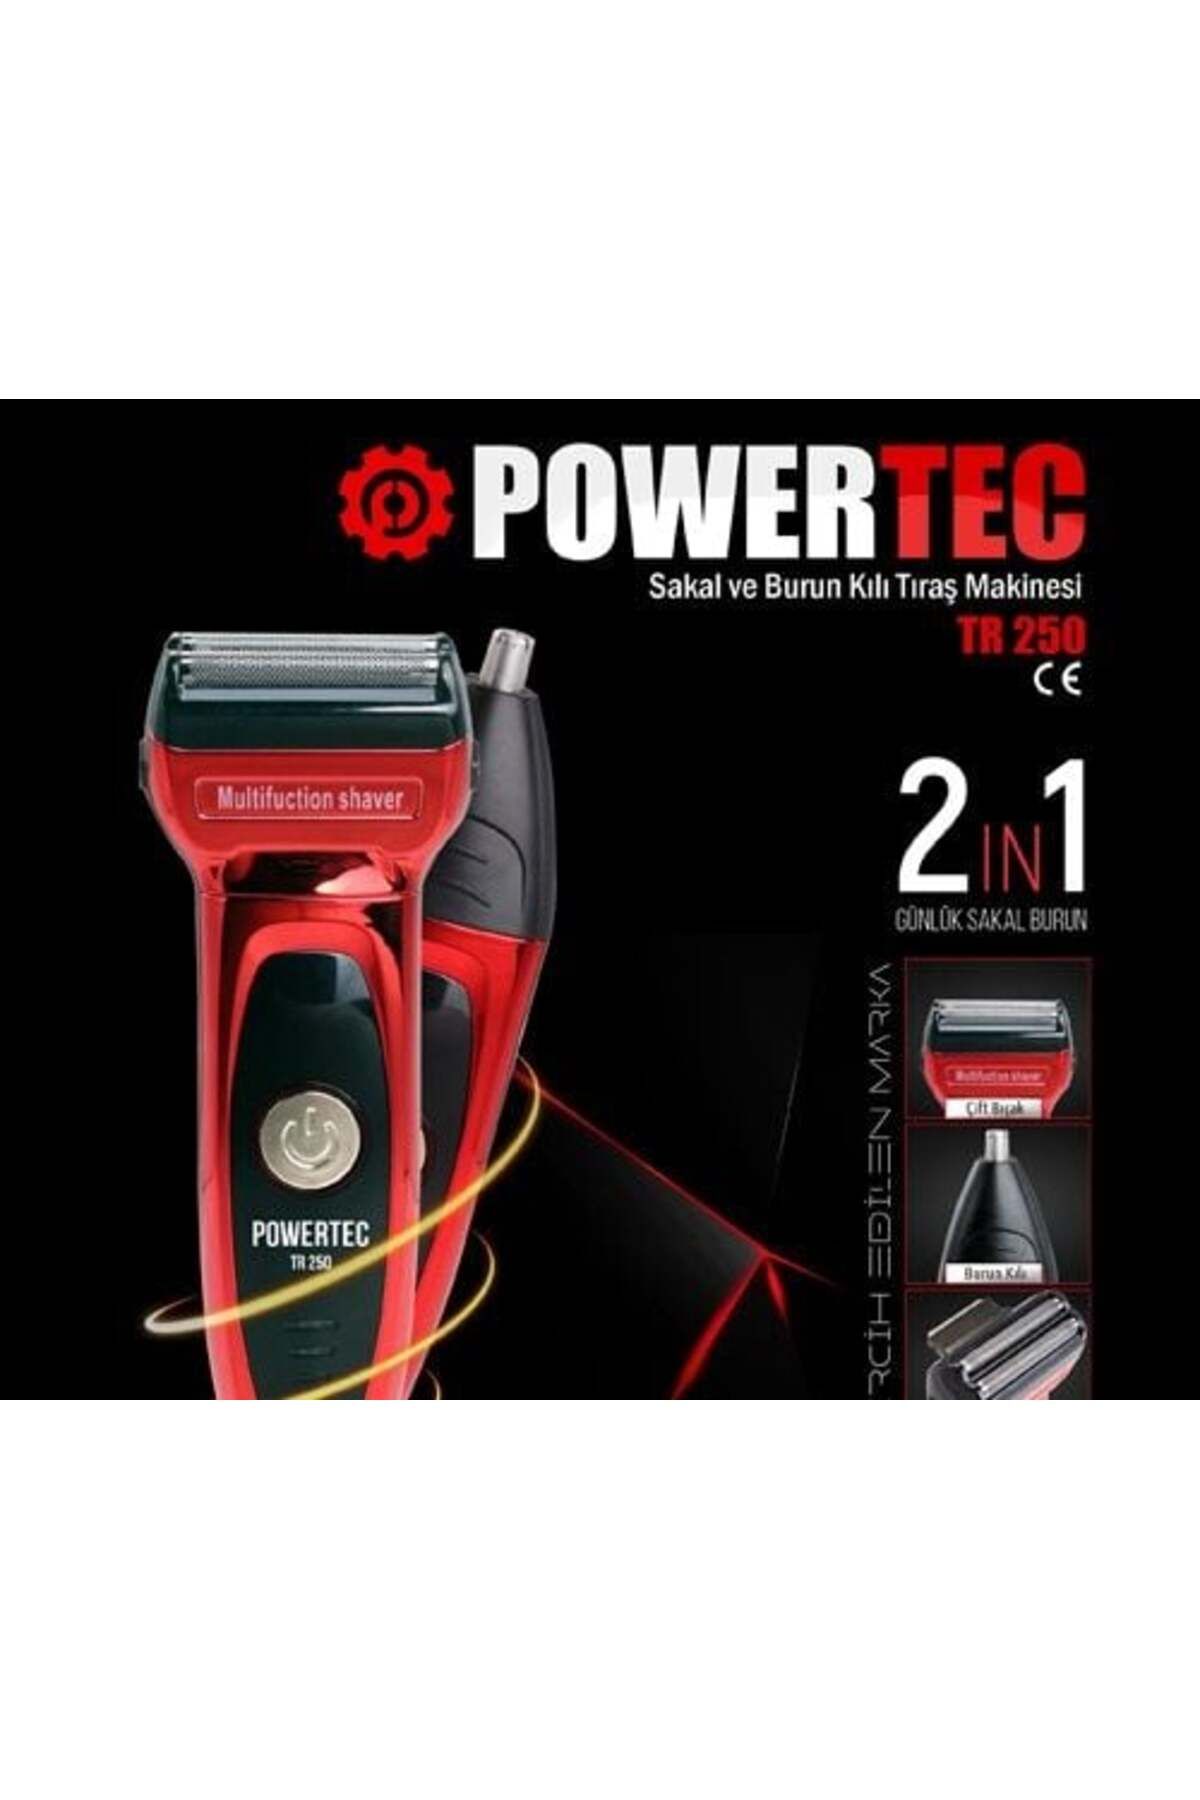 Powertec 2 Yıl TR-250 2 IN 1 Burun Ve Sakal Makinesi Kırmızı Yok Sakal 1-3 İthalatçı Garantili 1-2 Saat Şarj